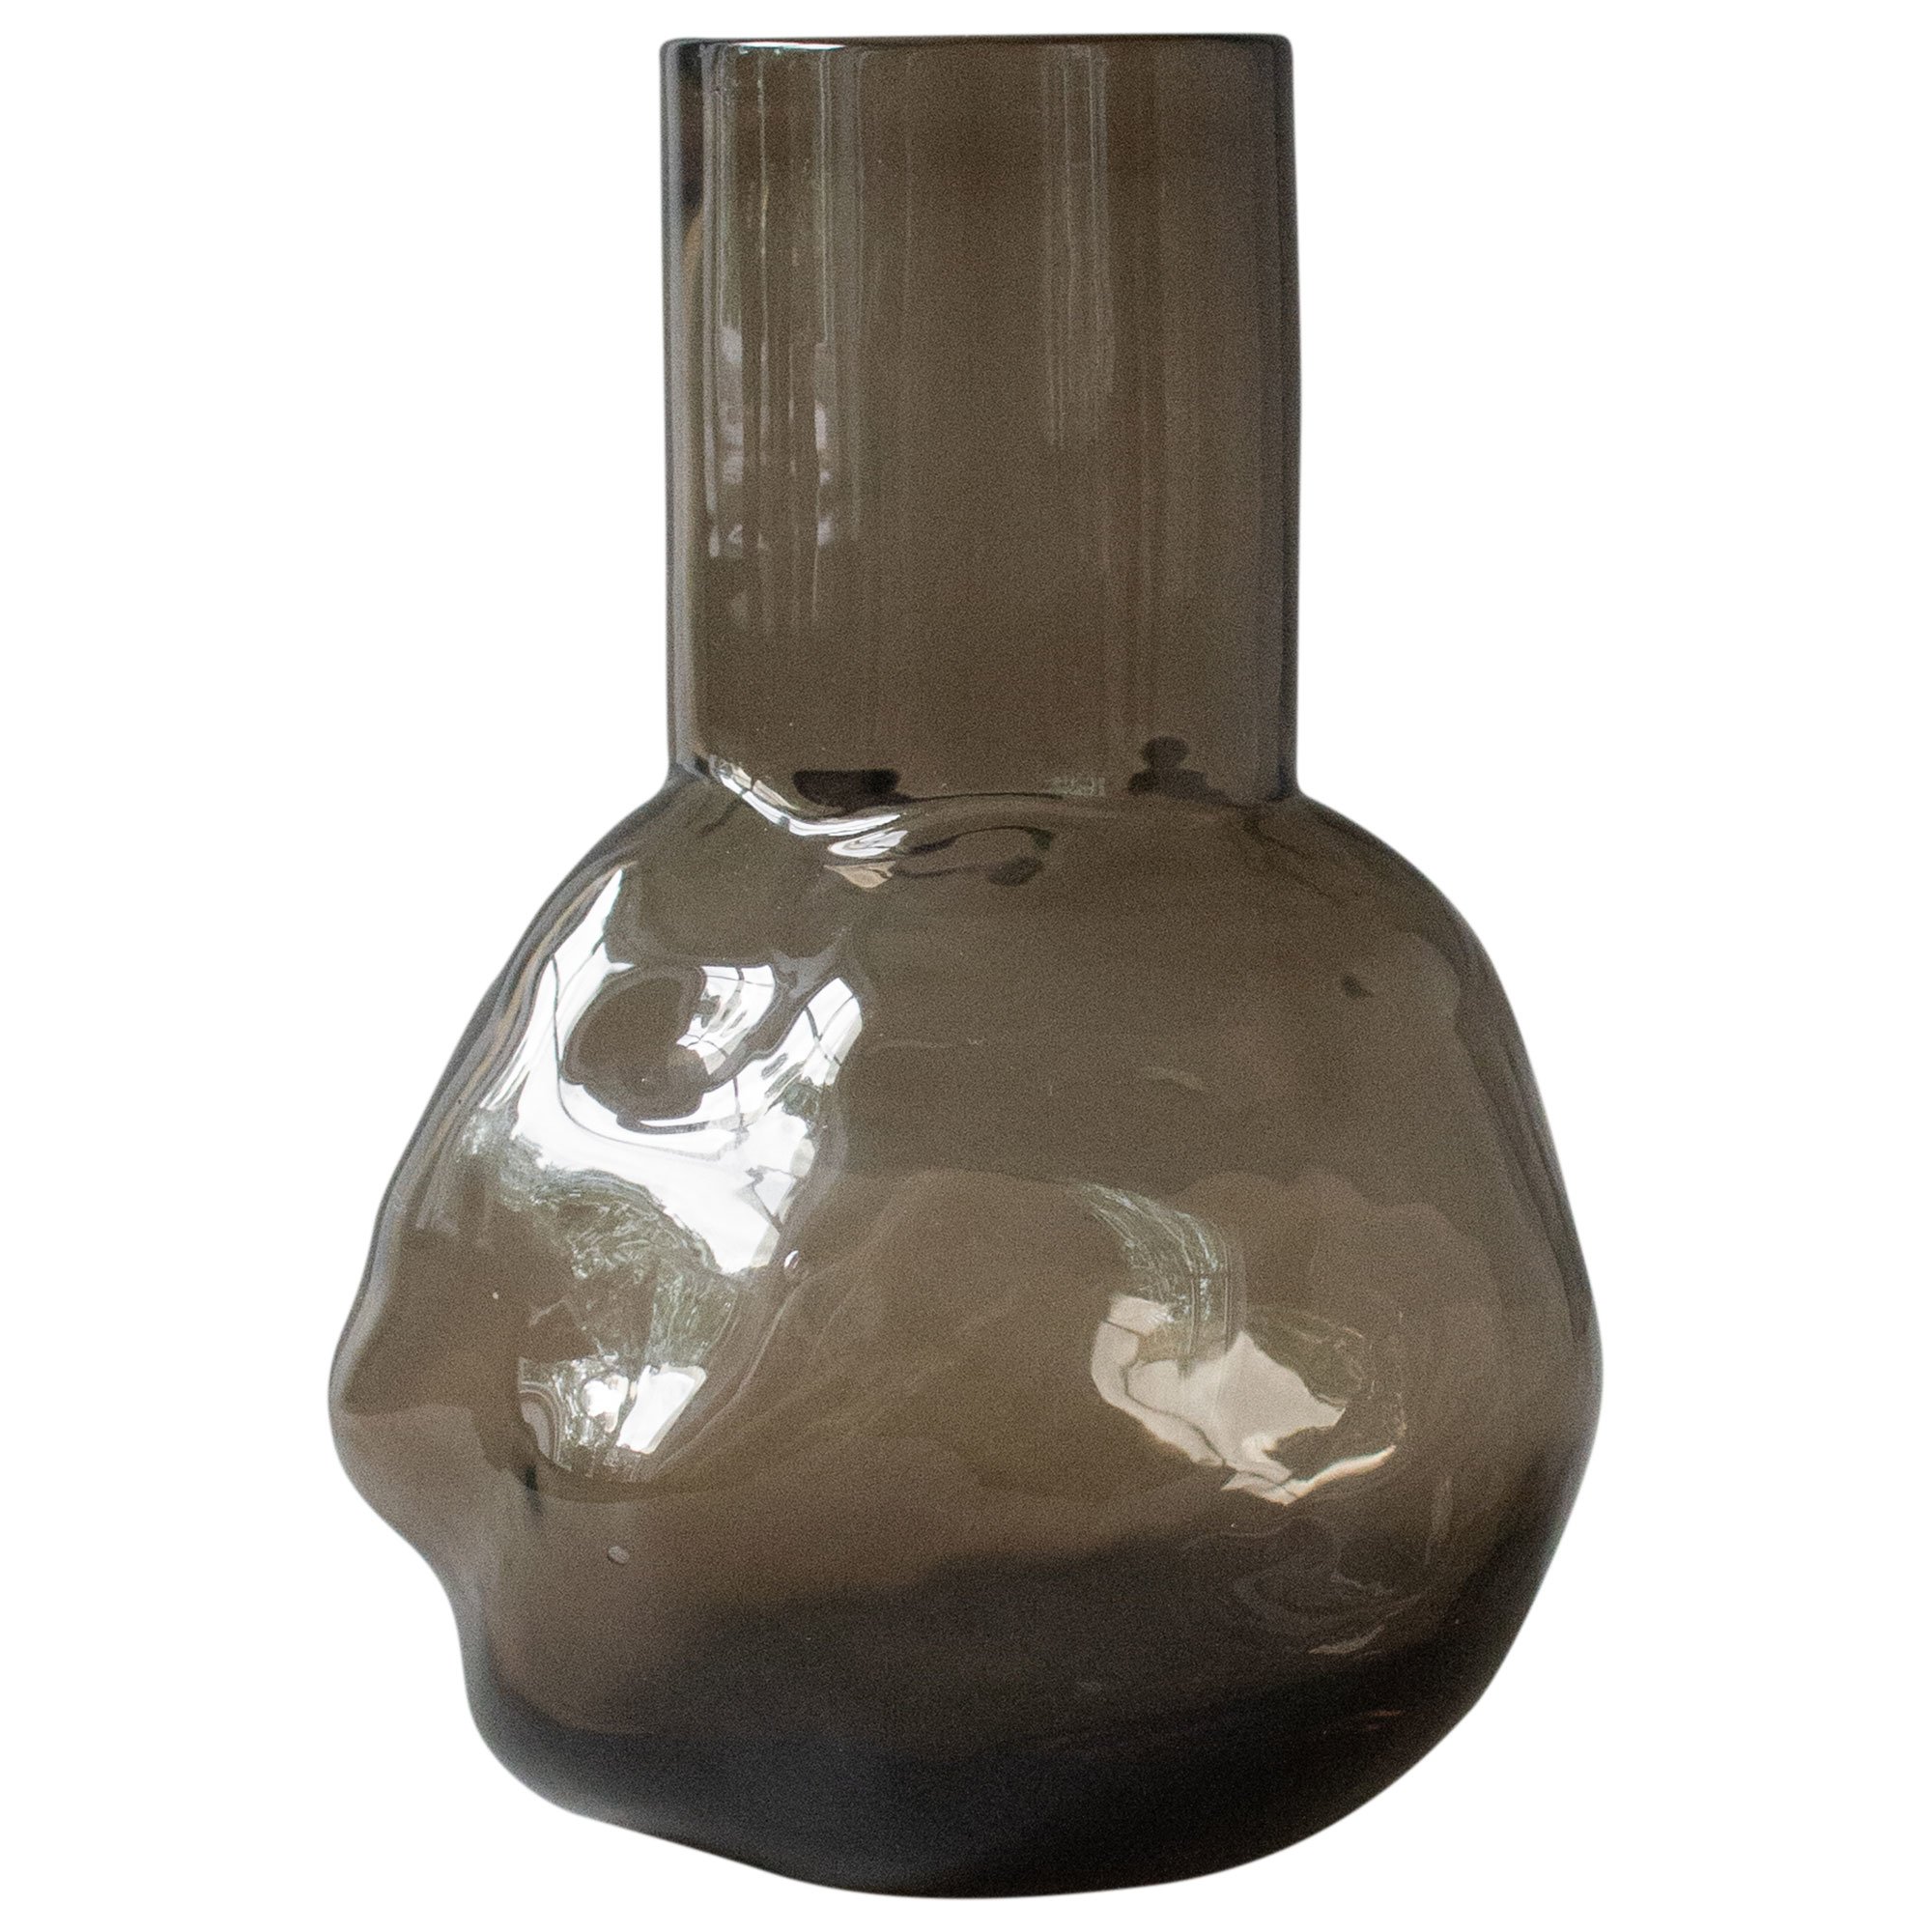 DBKD Bunch Small vas, 7x20 cm, brown